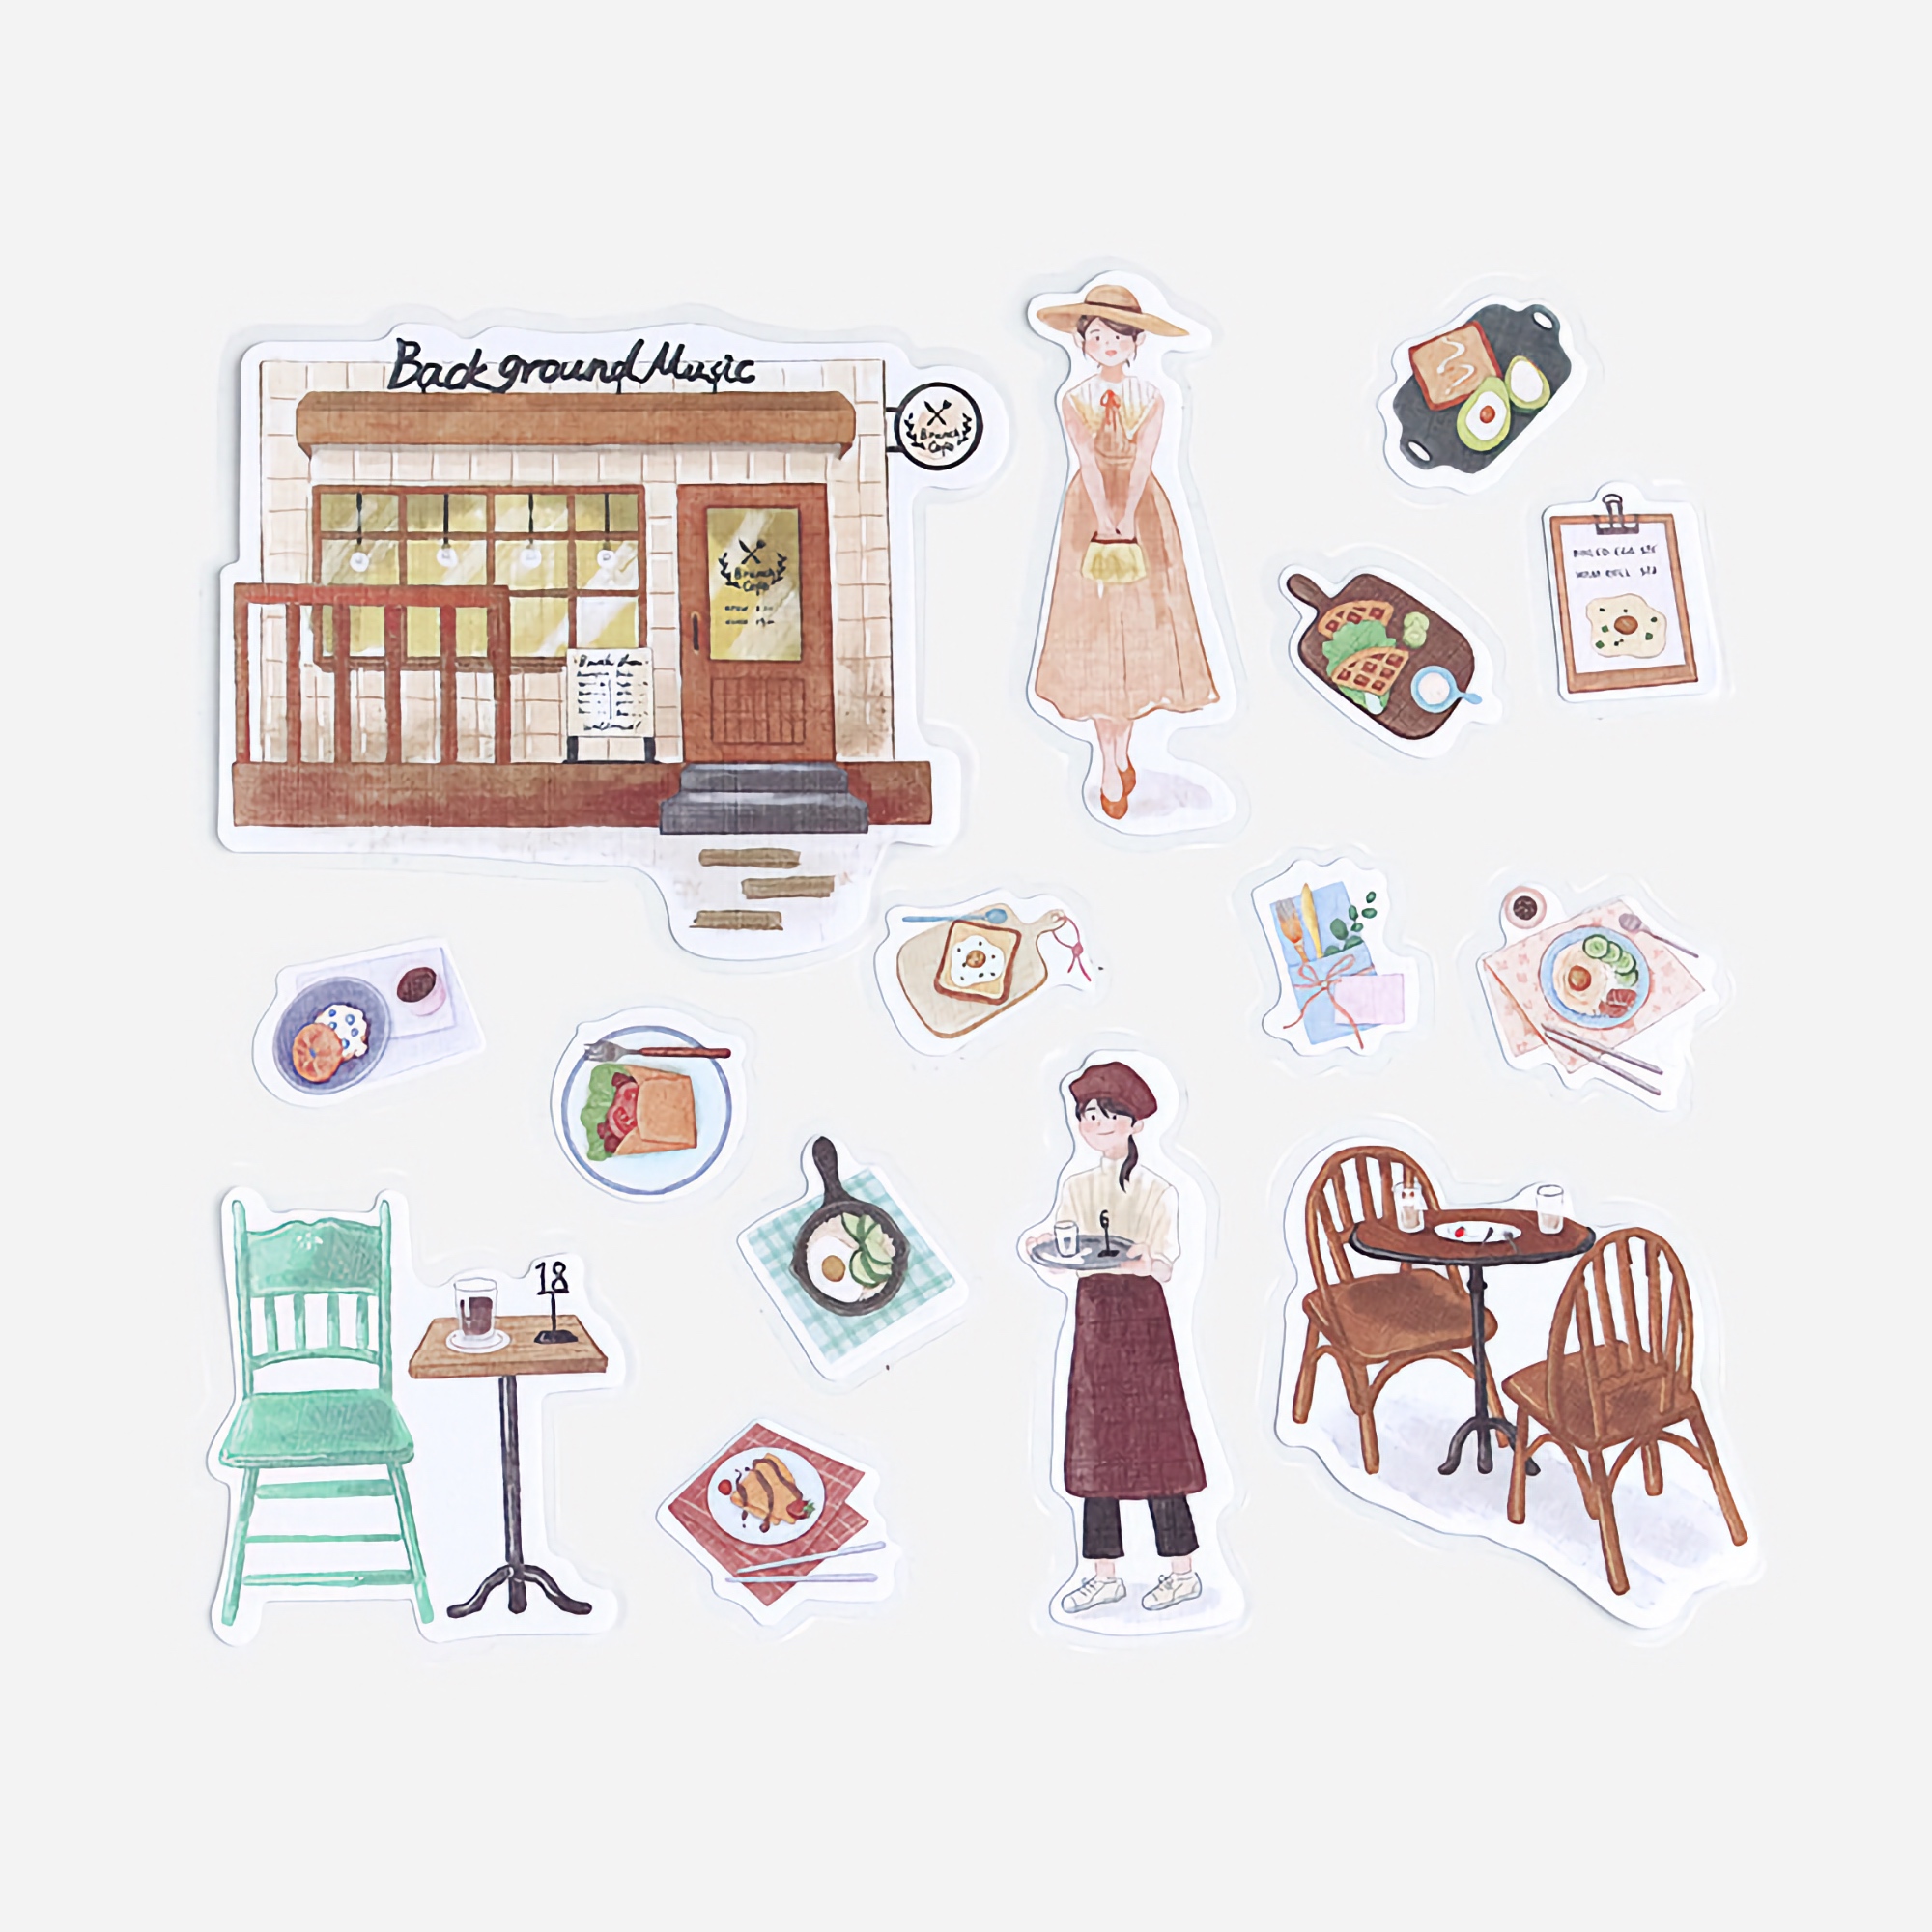 BGM Flake Stickers Little Shop / Brunch Cafe Linen Paper